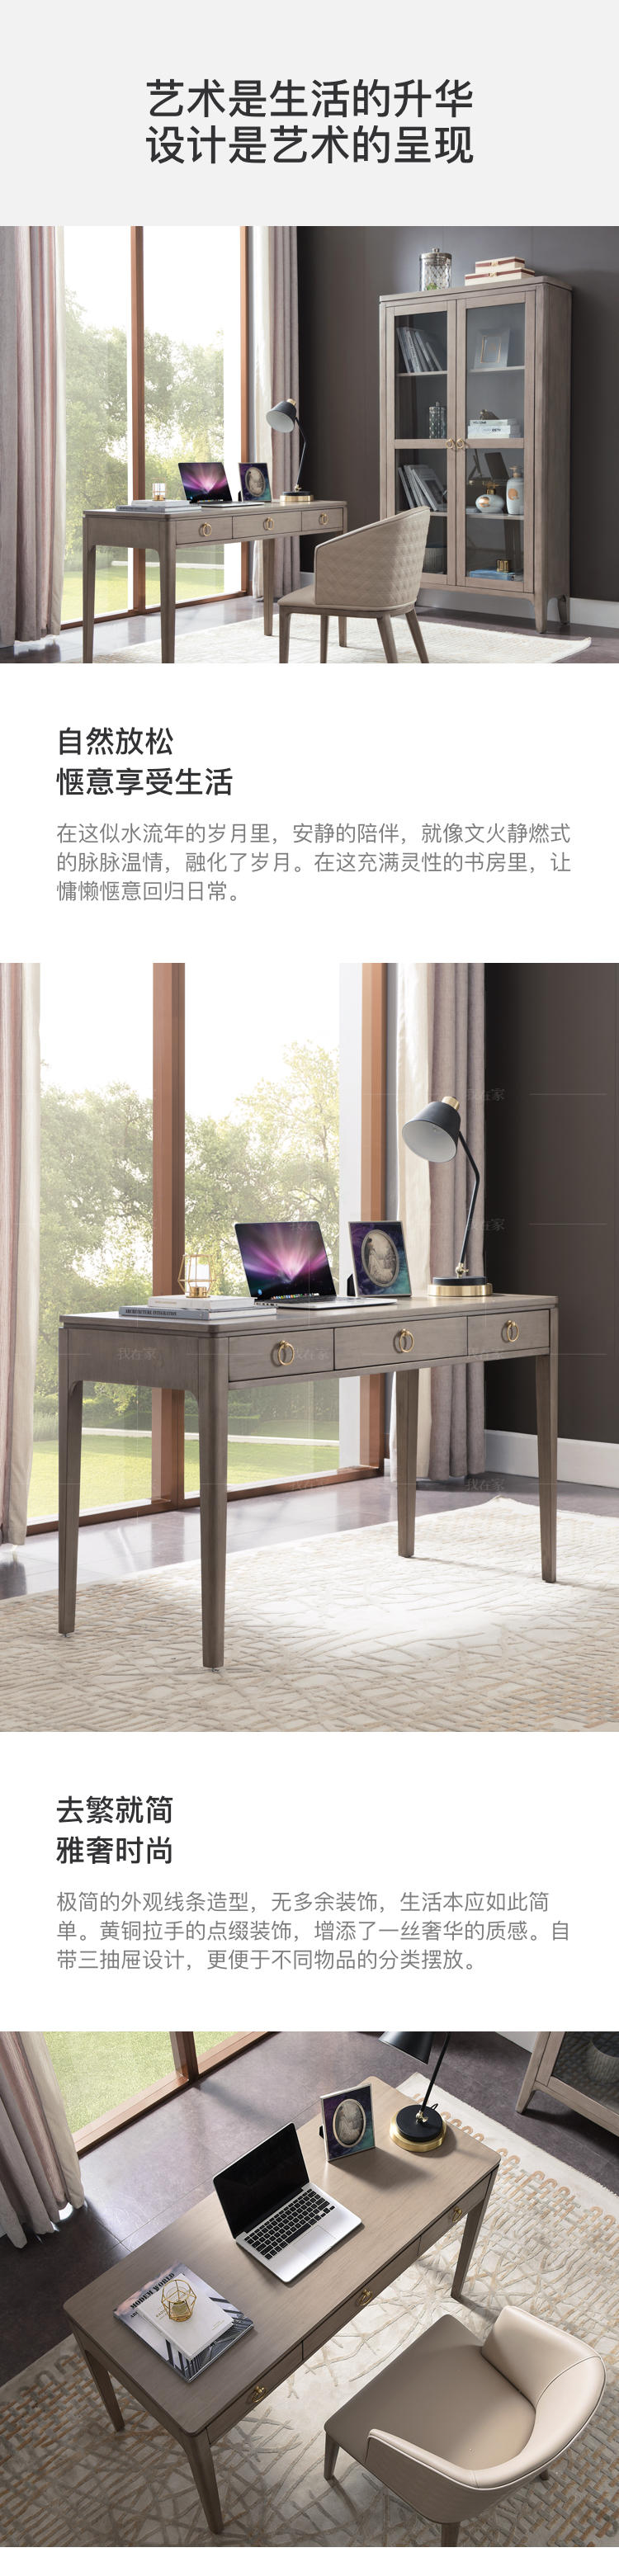 现代美式风格休斯顿书桌的家具详细介绍